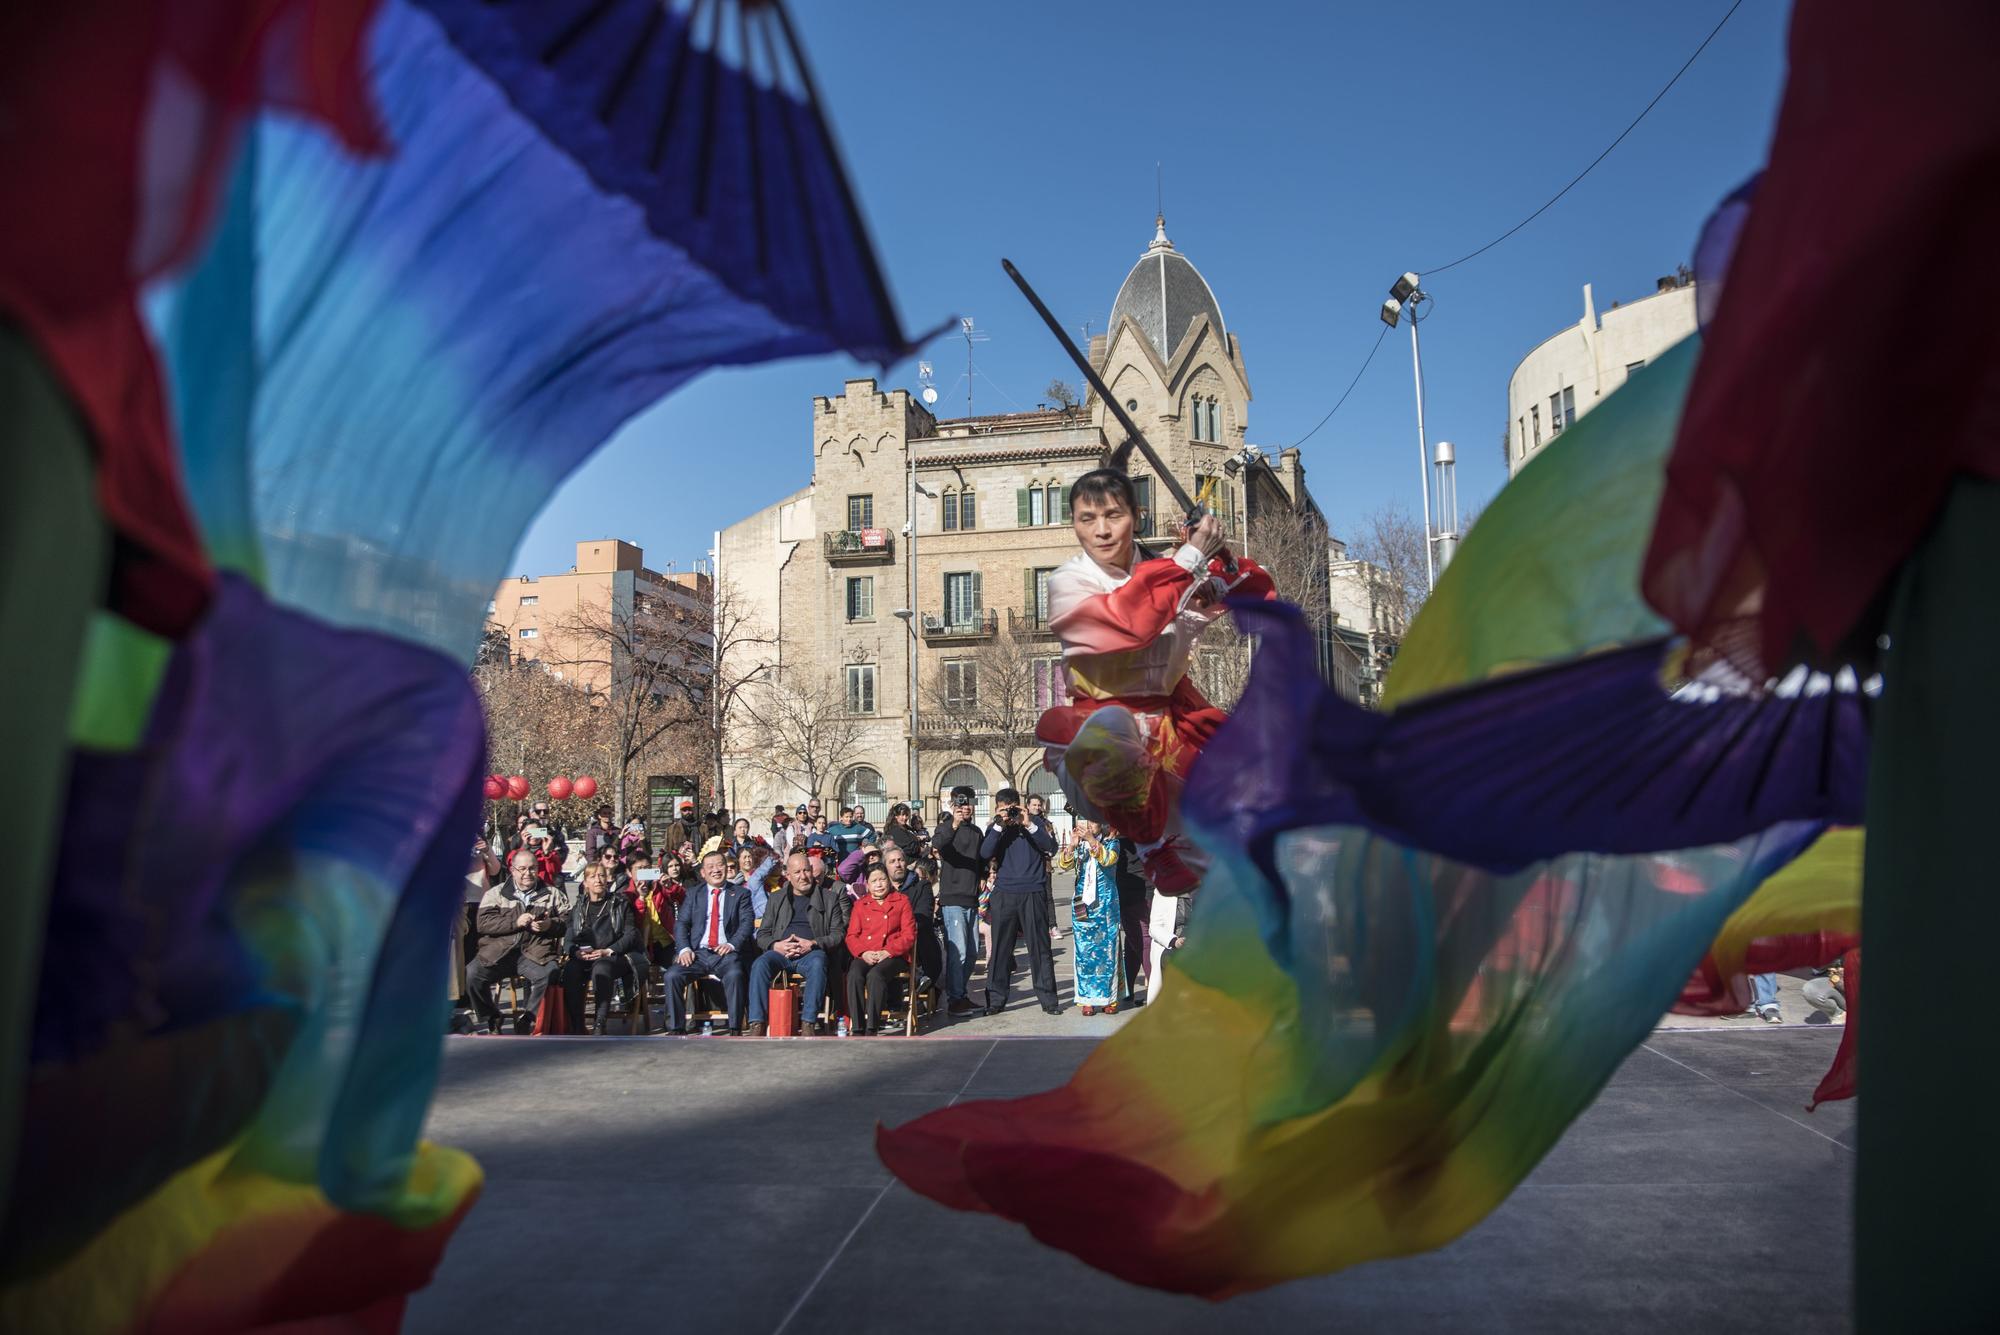 Celebració de l'Any Nou Xinès a la plaça de Sant Domènec de Manresa